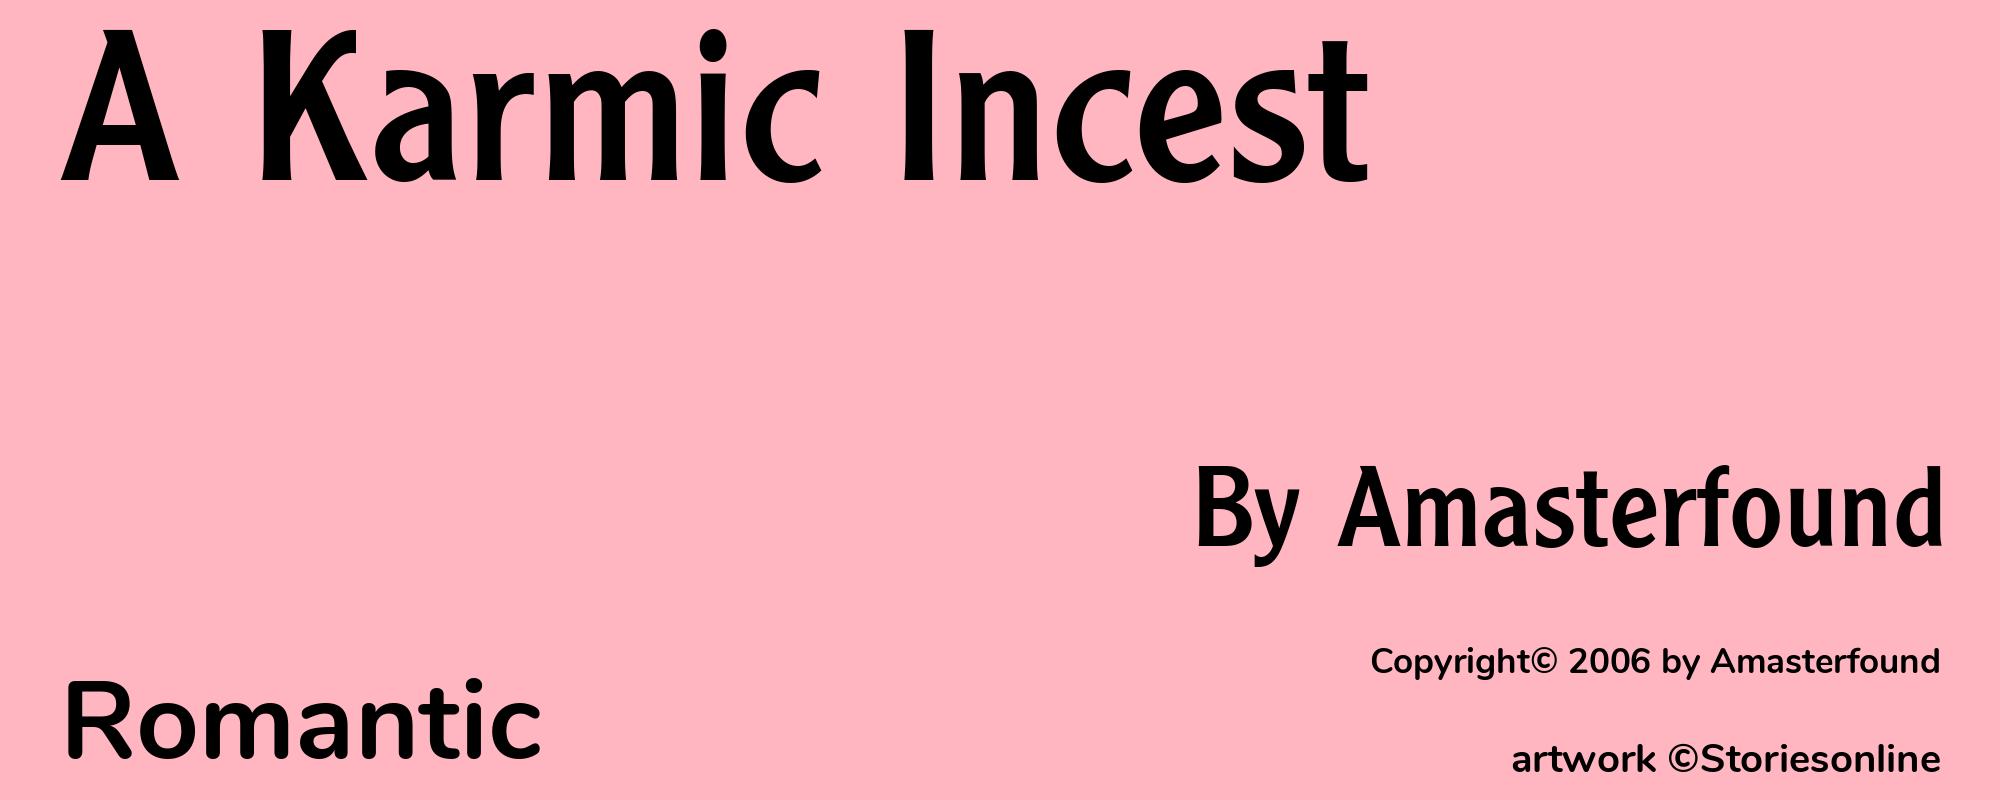 A Karmic Incest - Cover